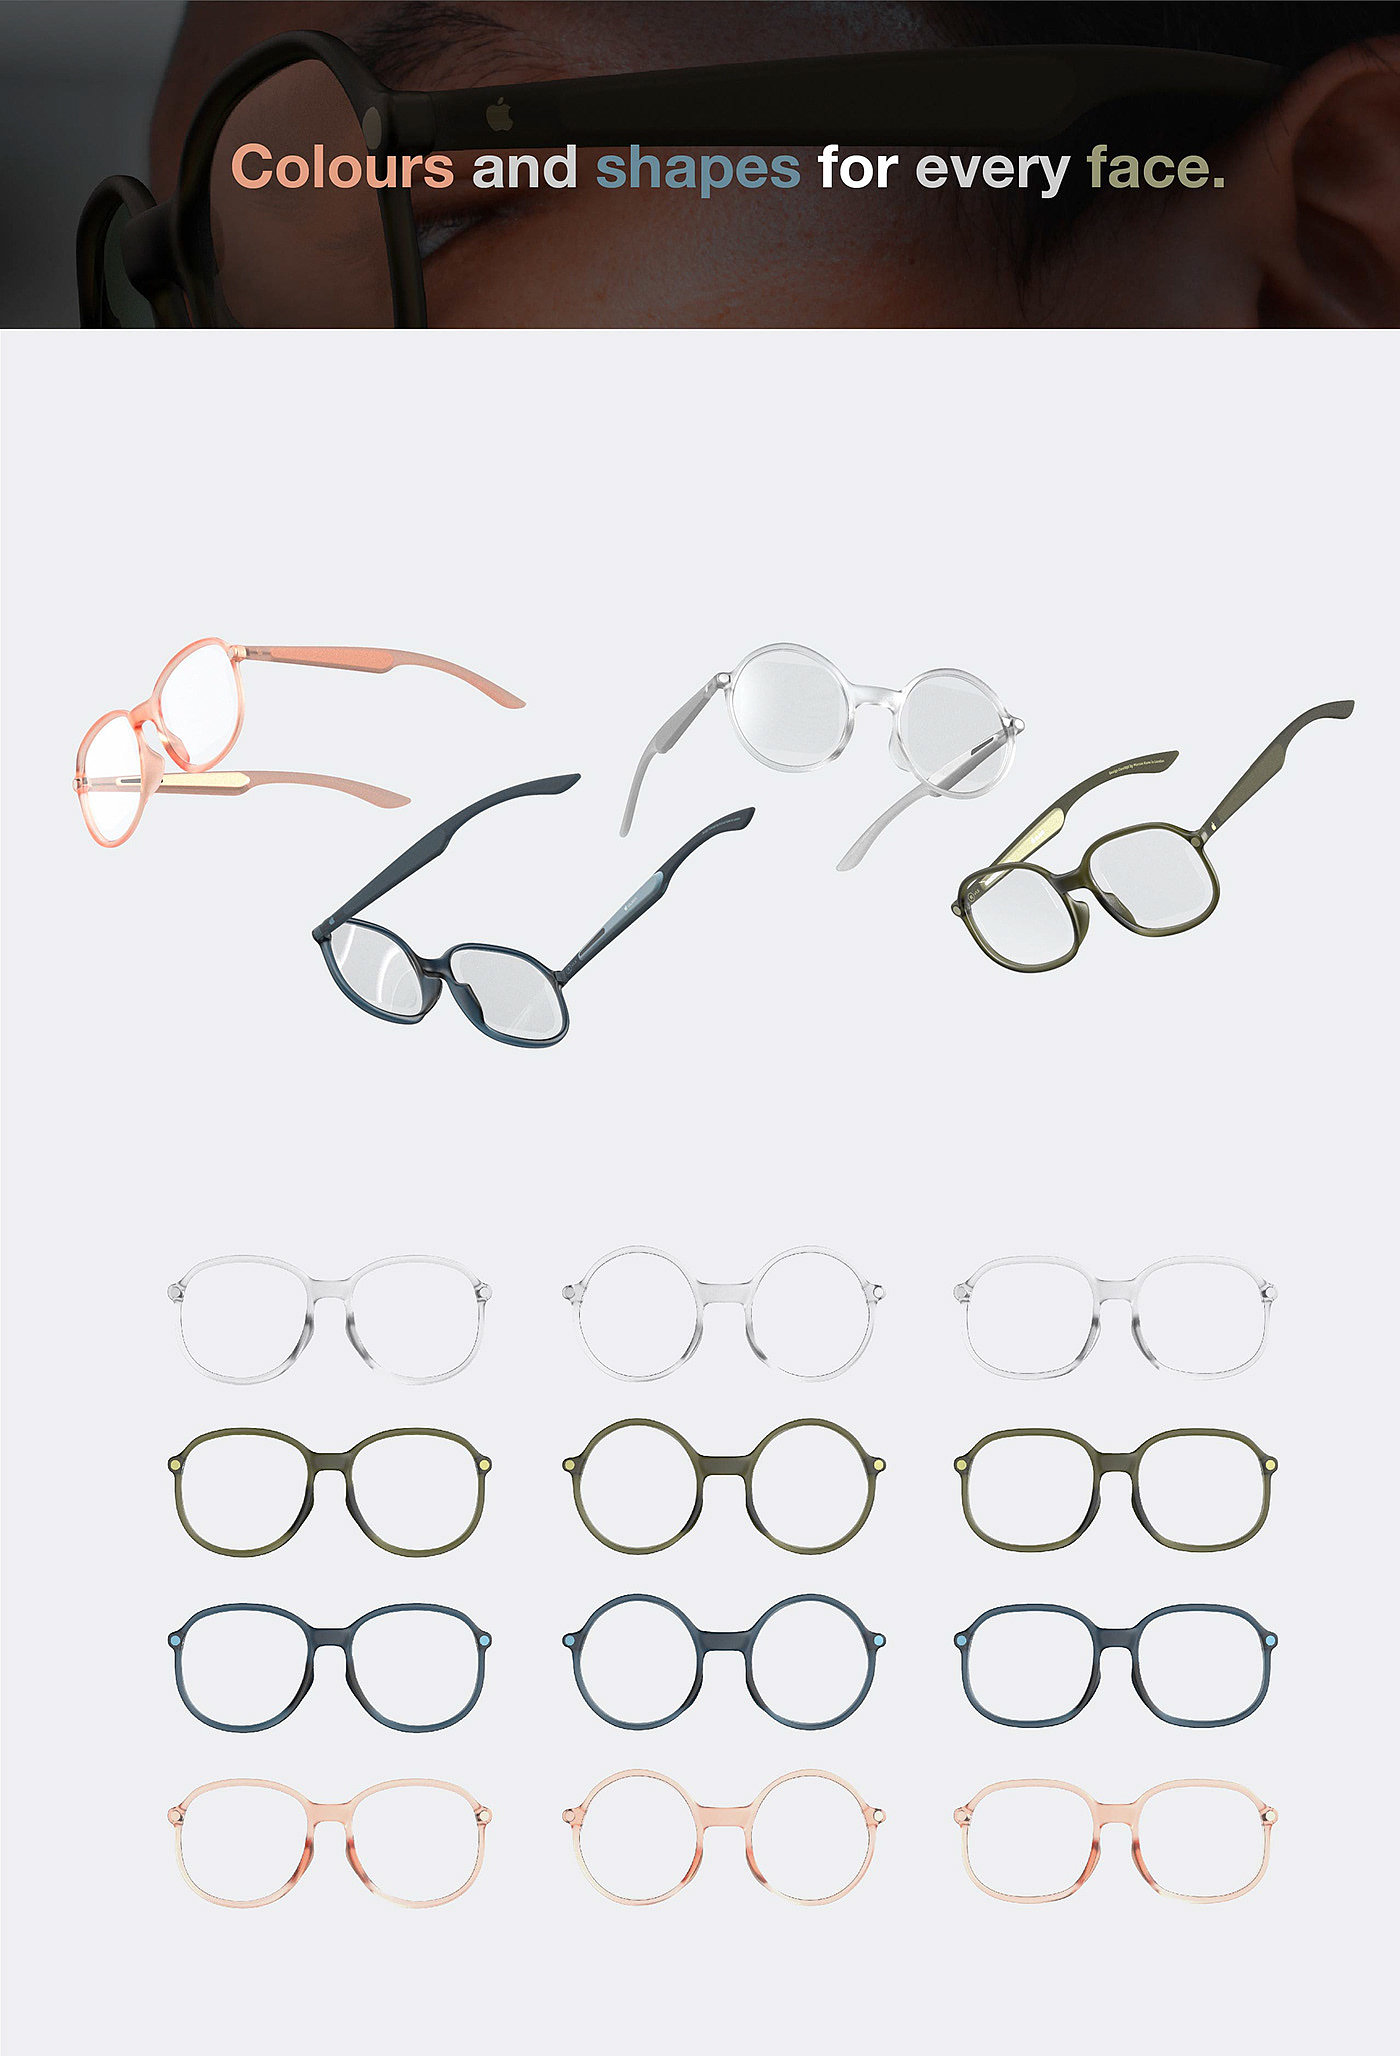 Apple Glass，3D眼镜，ar，